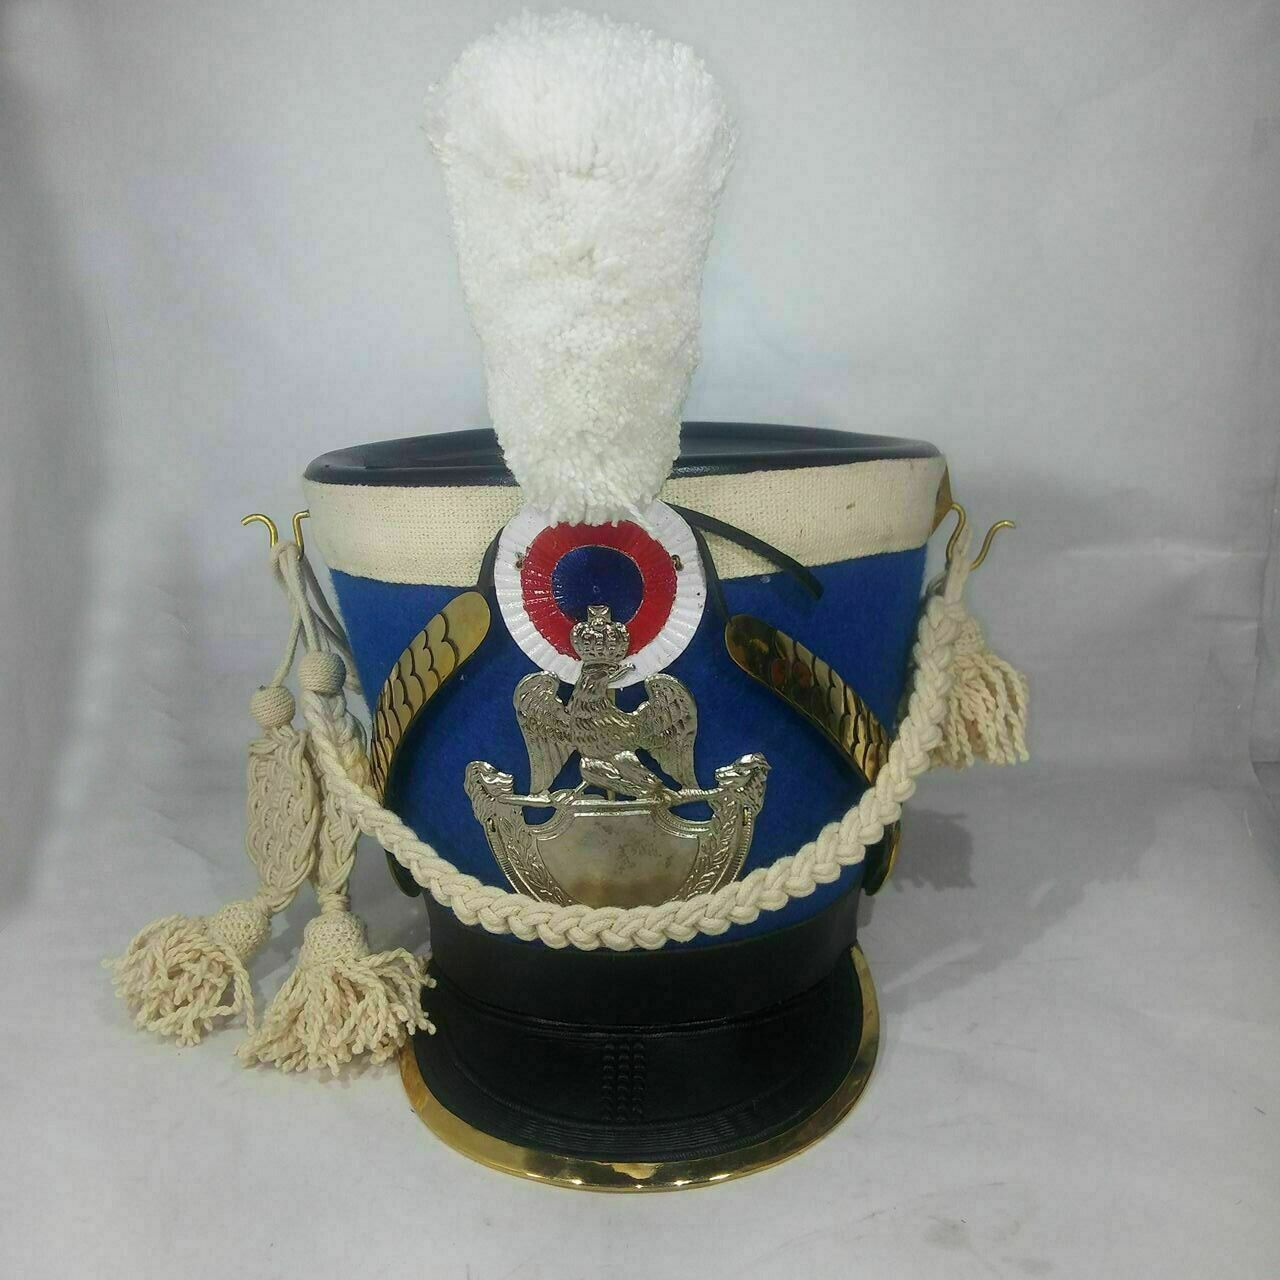 DGH® Nepoleonic Era Blue Shako Hat+ White Long Pompom + White Cordon ASA